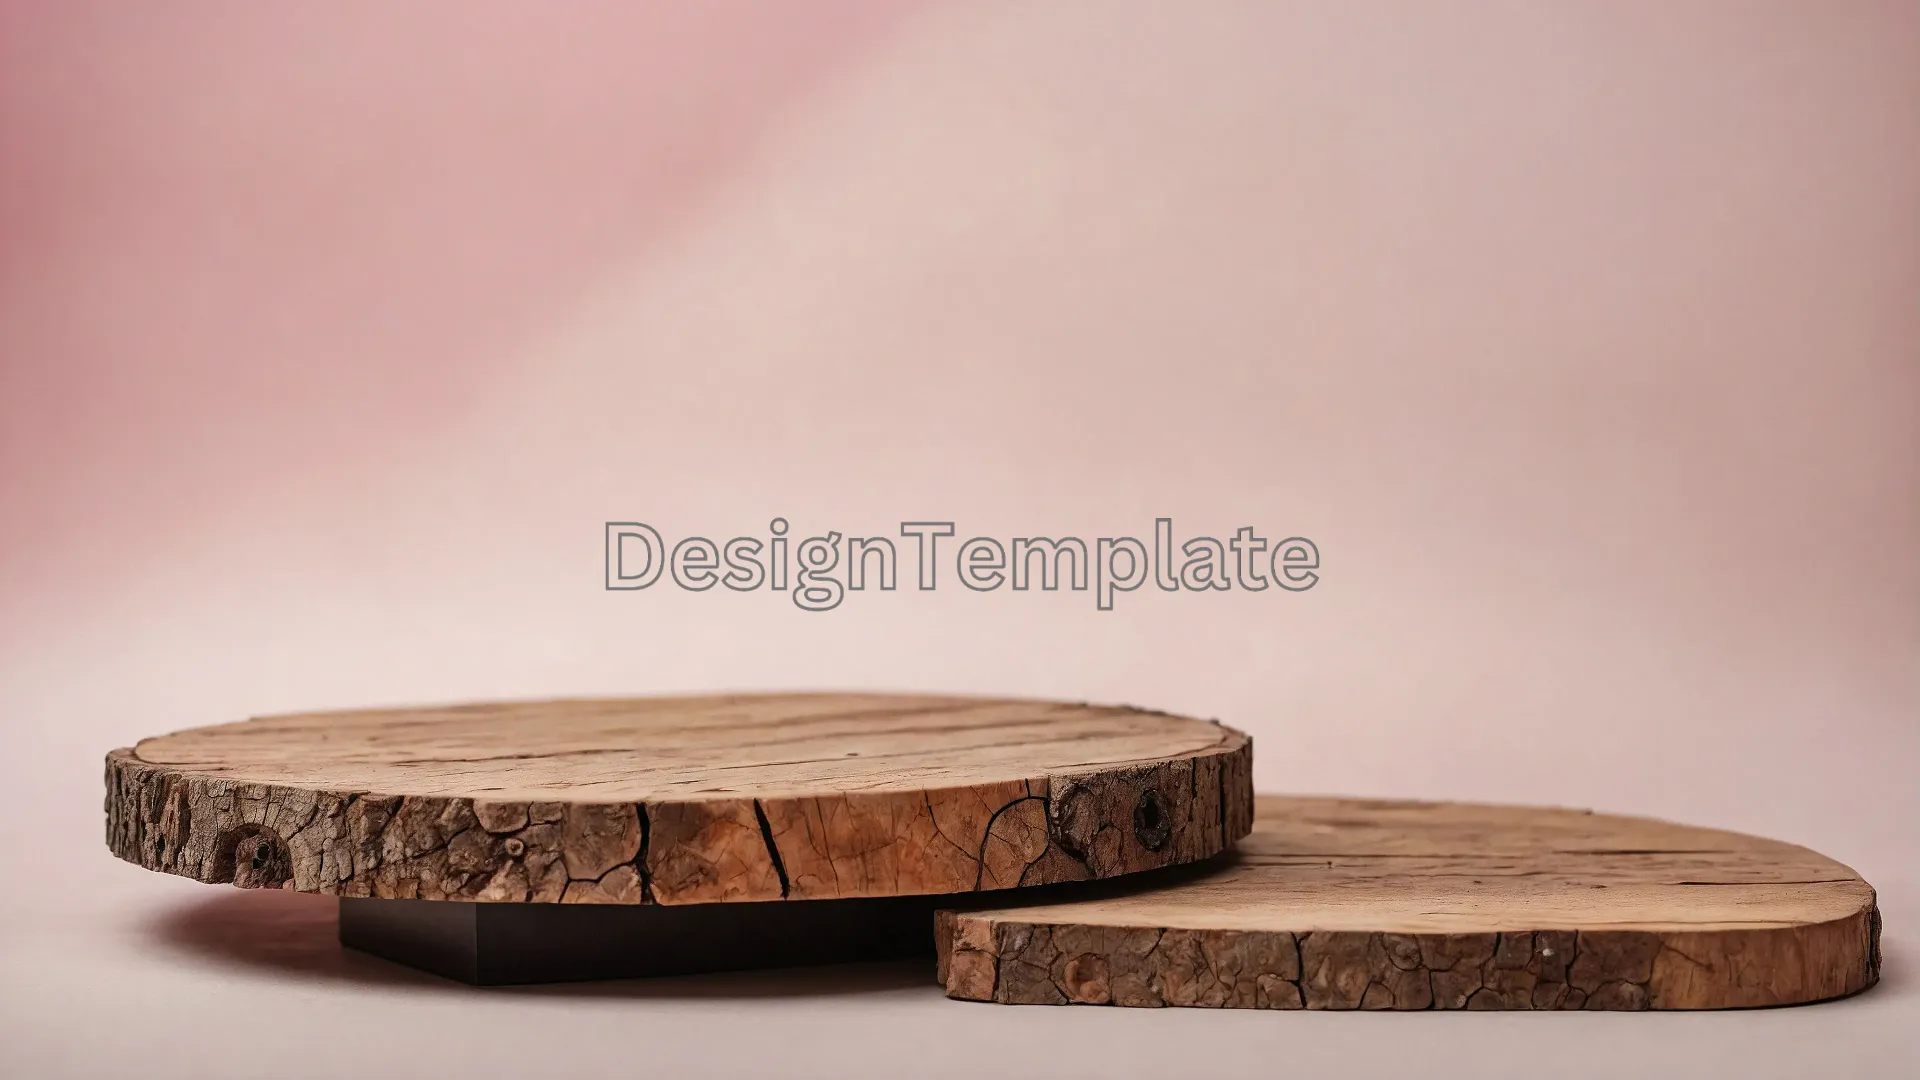 Rustic Wood Slice Podium on Pink Pastel Background Image image